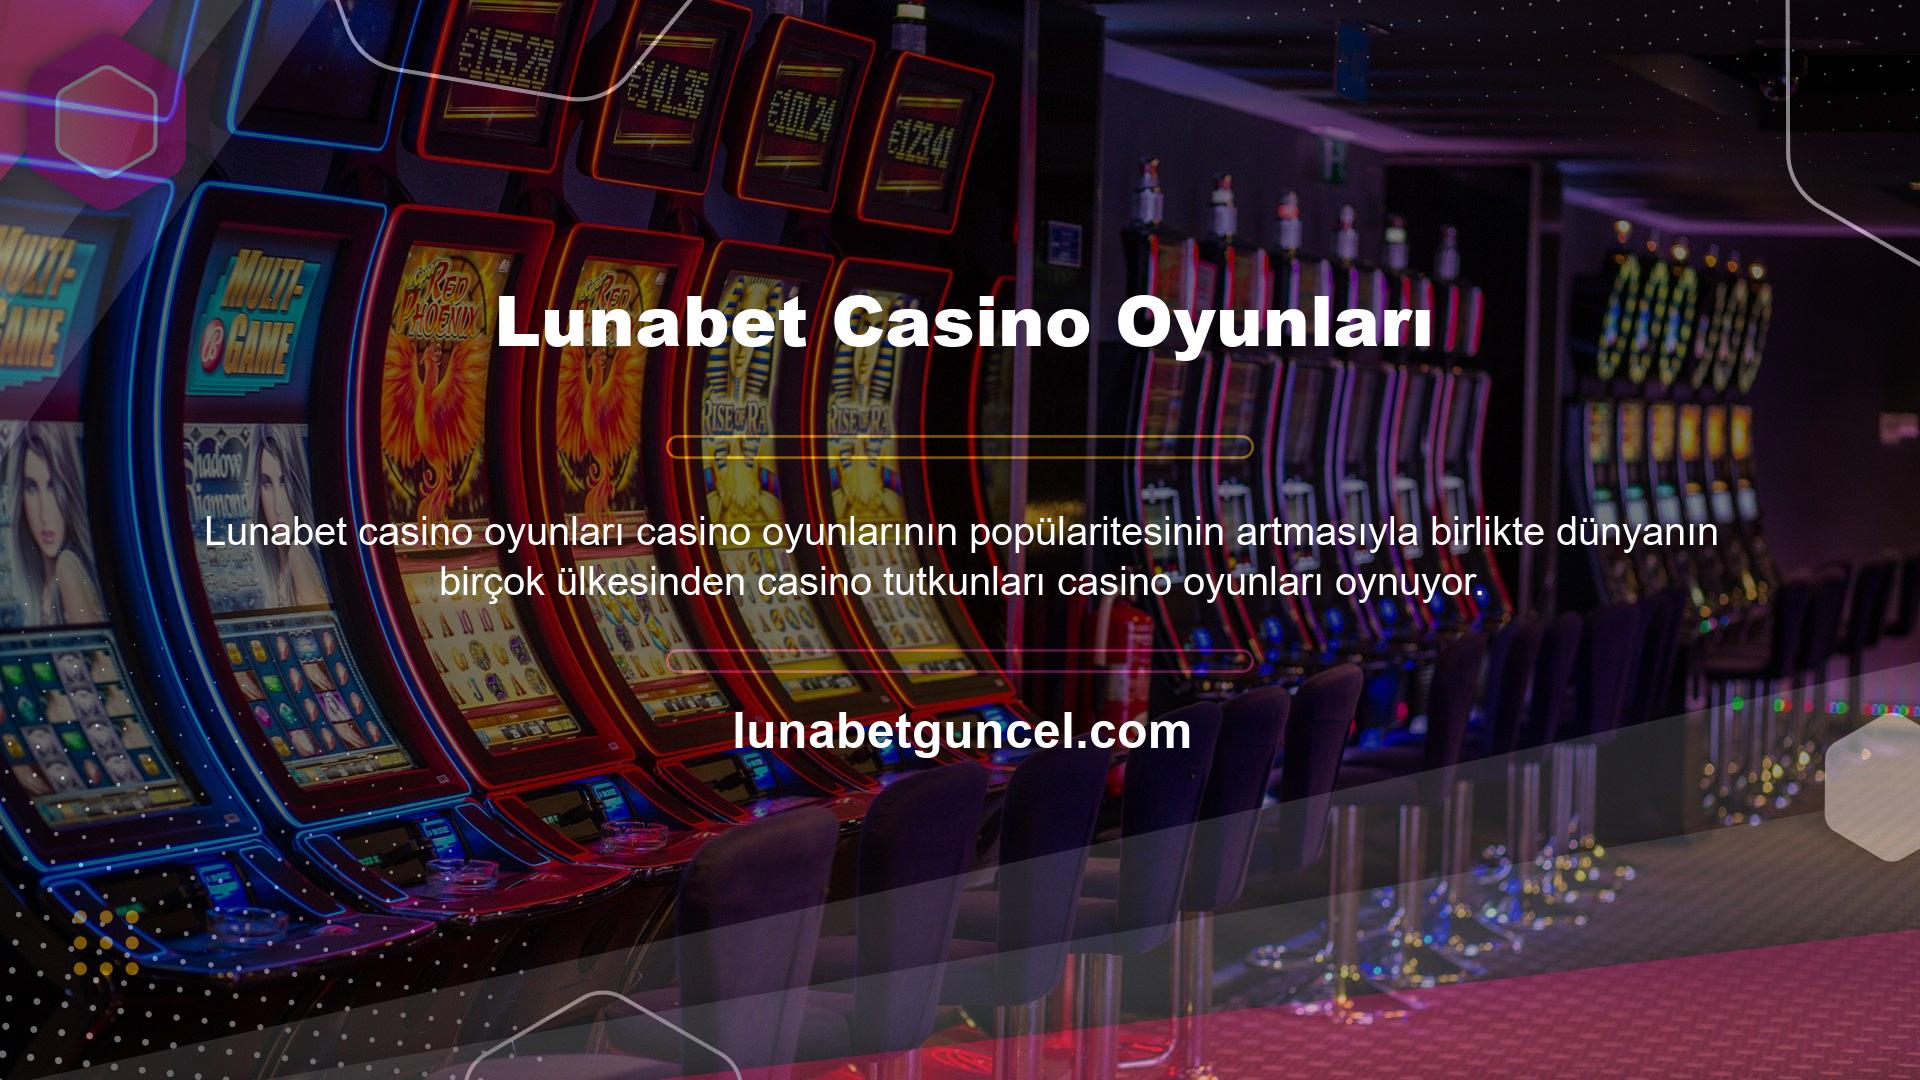 Avrupa ülkeleri, Afrika ülkeleri, Asya ülkeleri, Amerika Birleşik Devletleri ve Türkiye dahil olmak üzere Lunabet casino sunan birçok ülke var